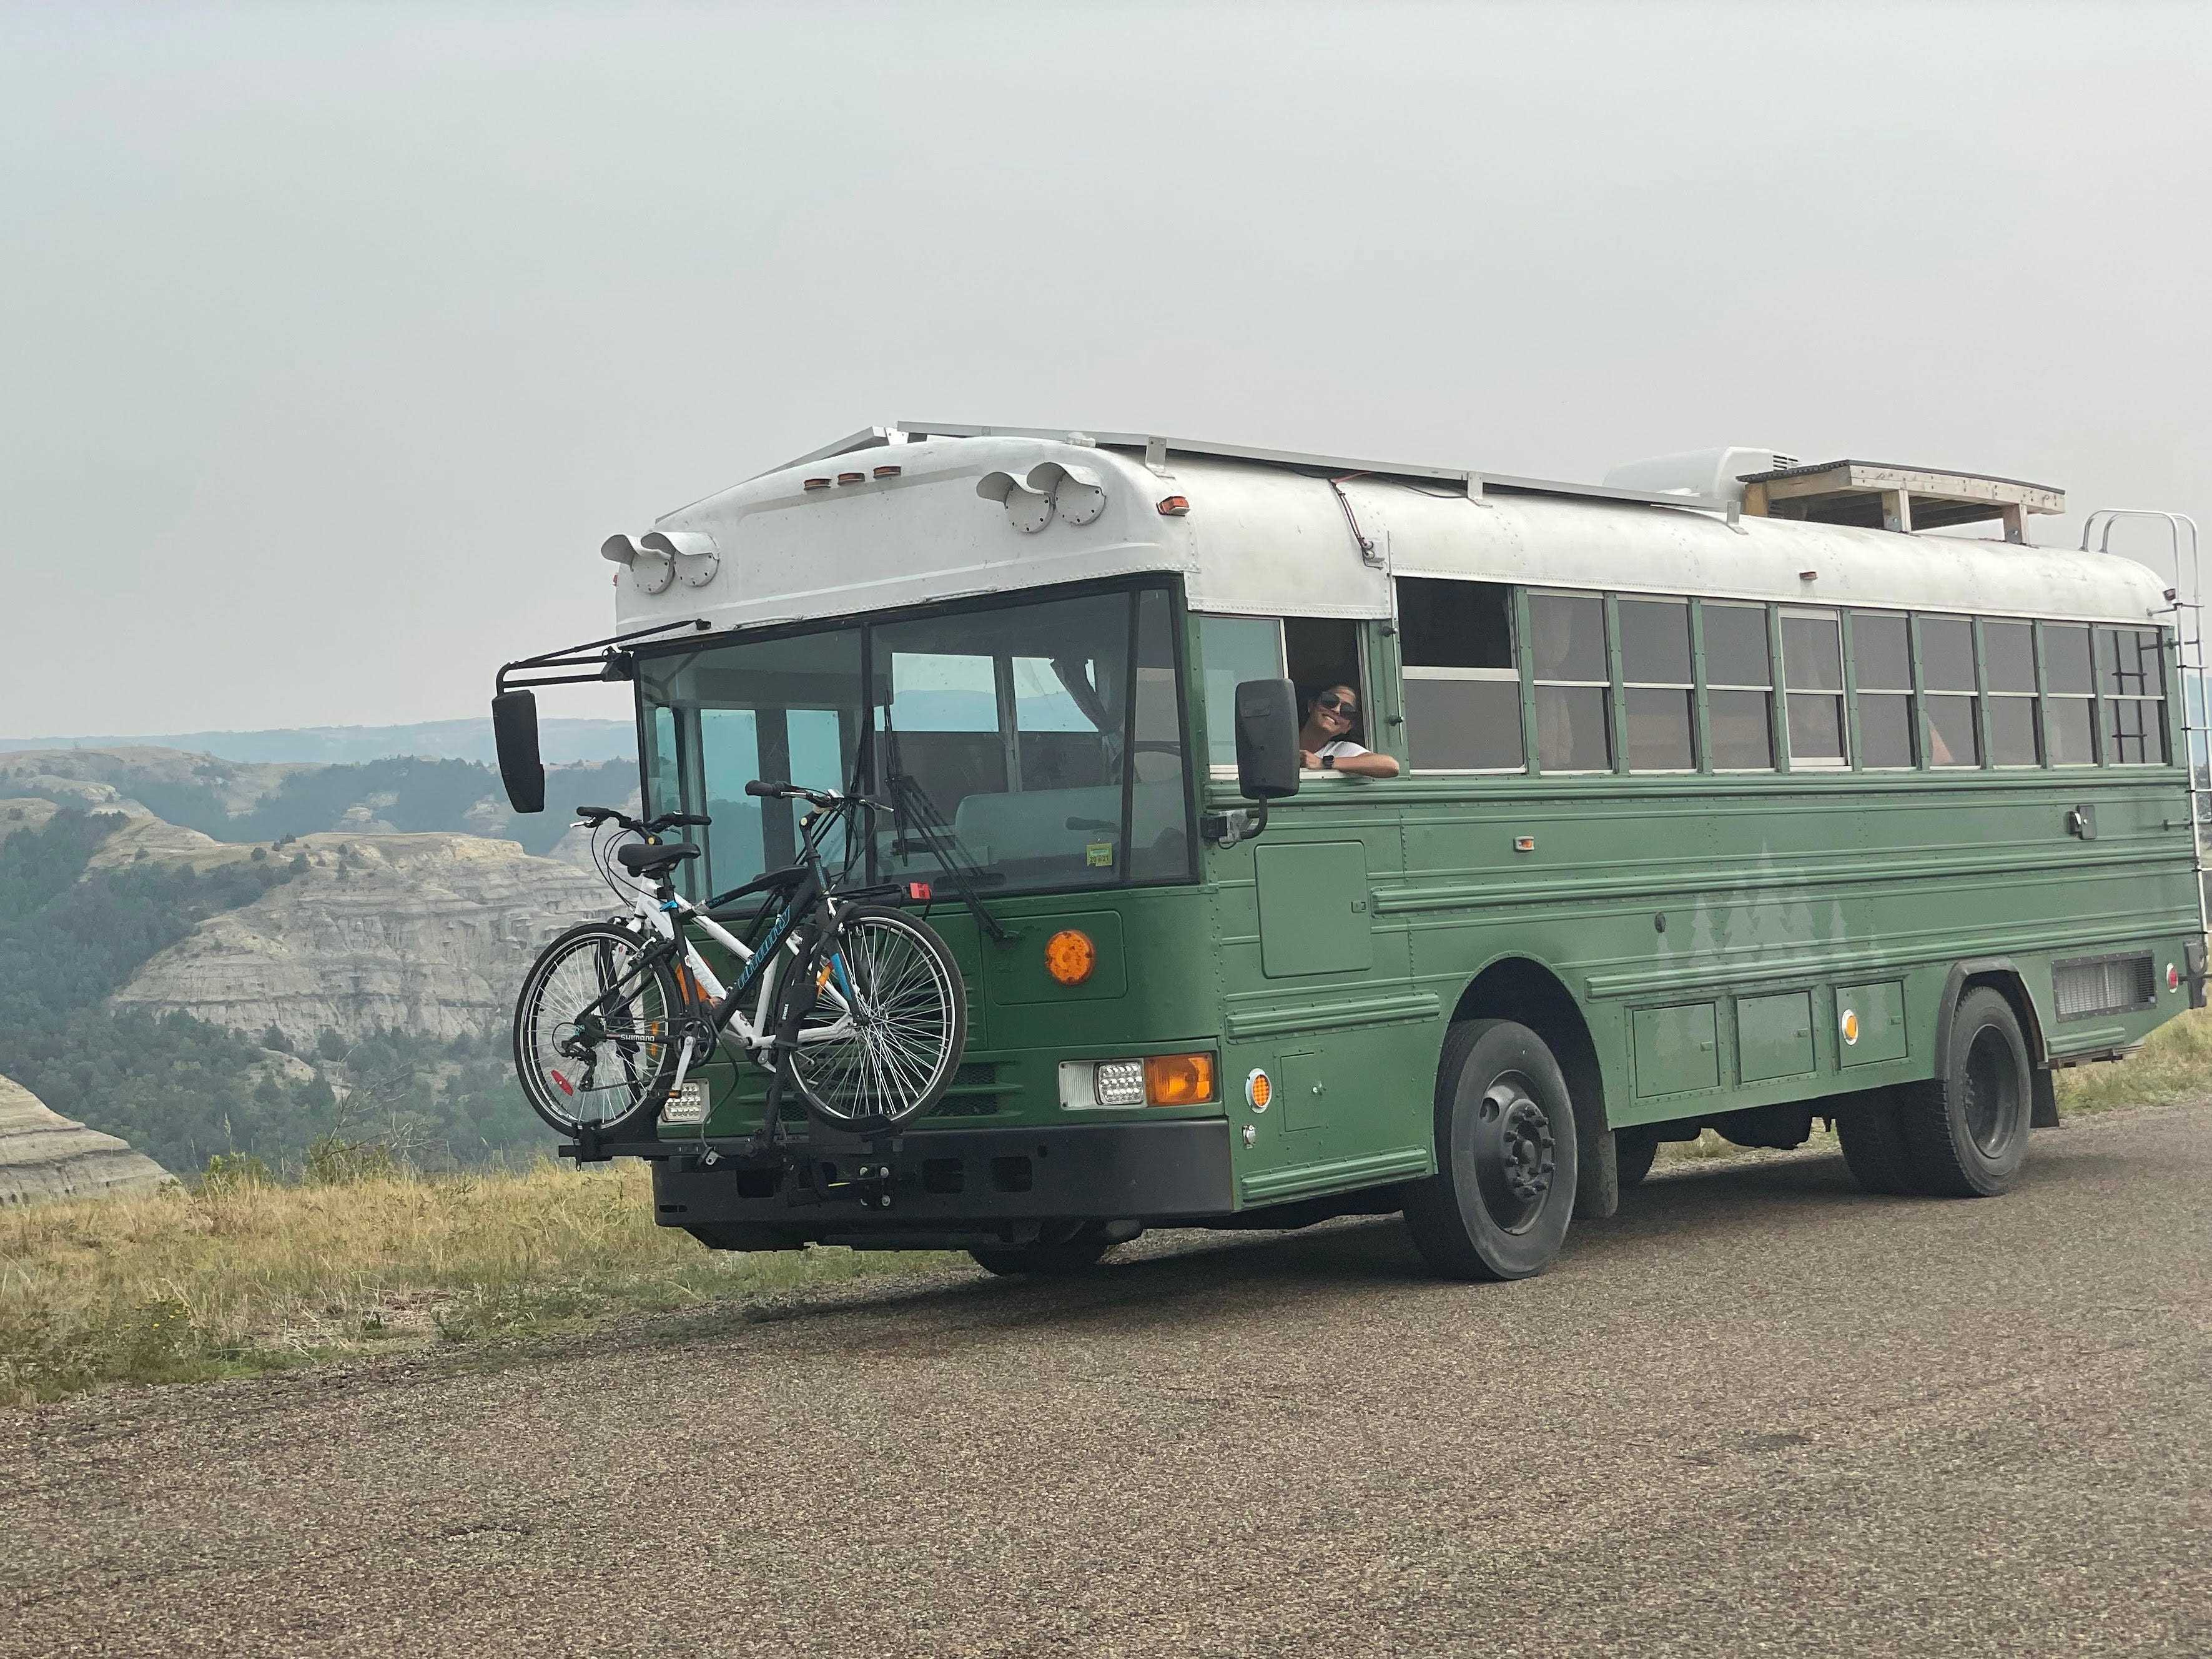 Ein grüner Bus auf einer Schotterstraße mit Bergkette im Hintergrund